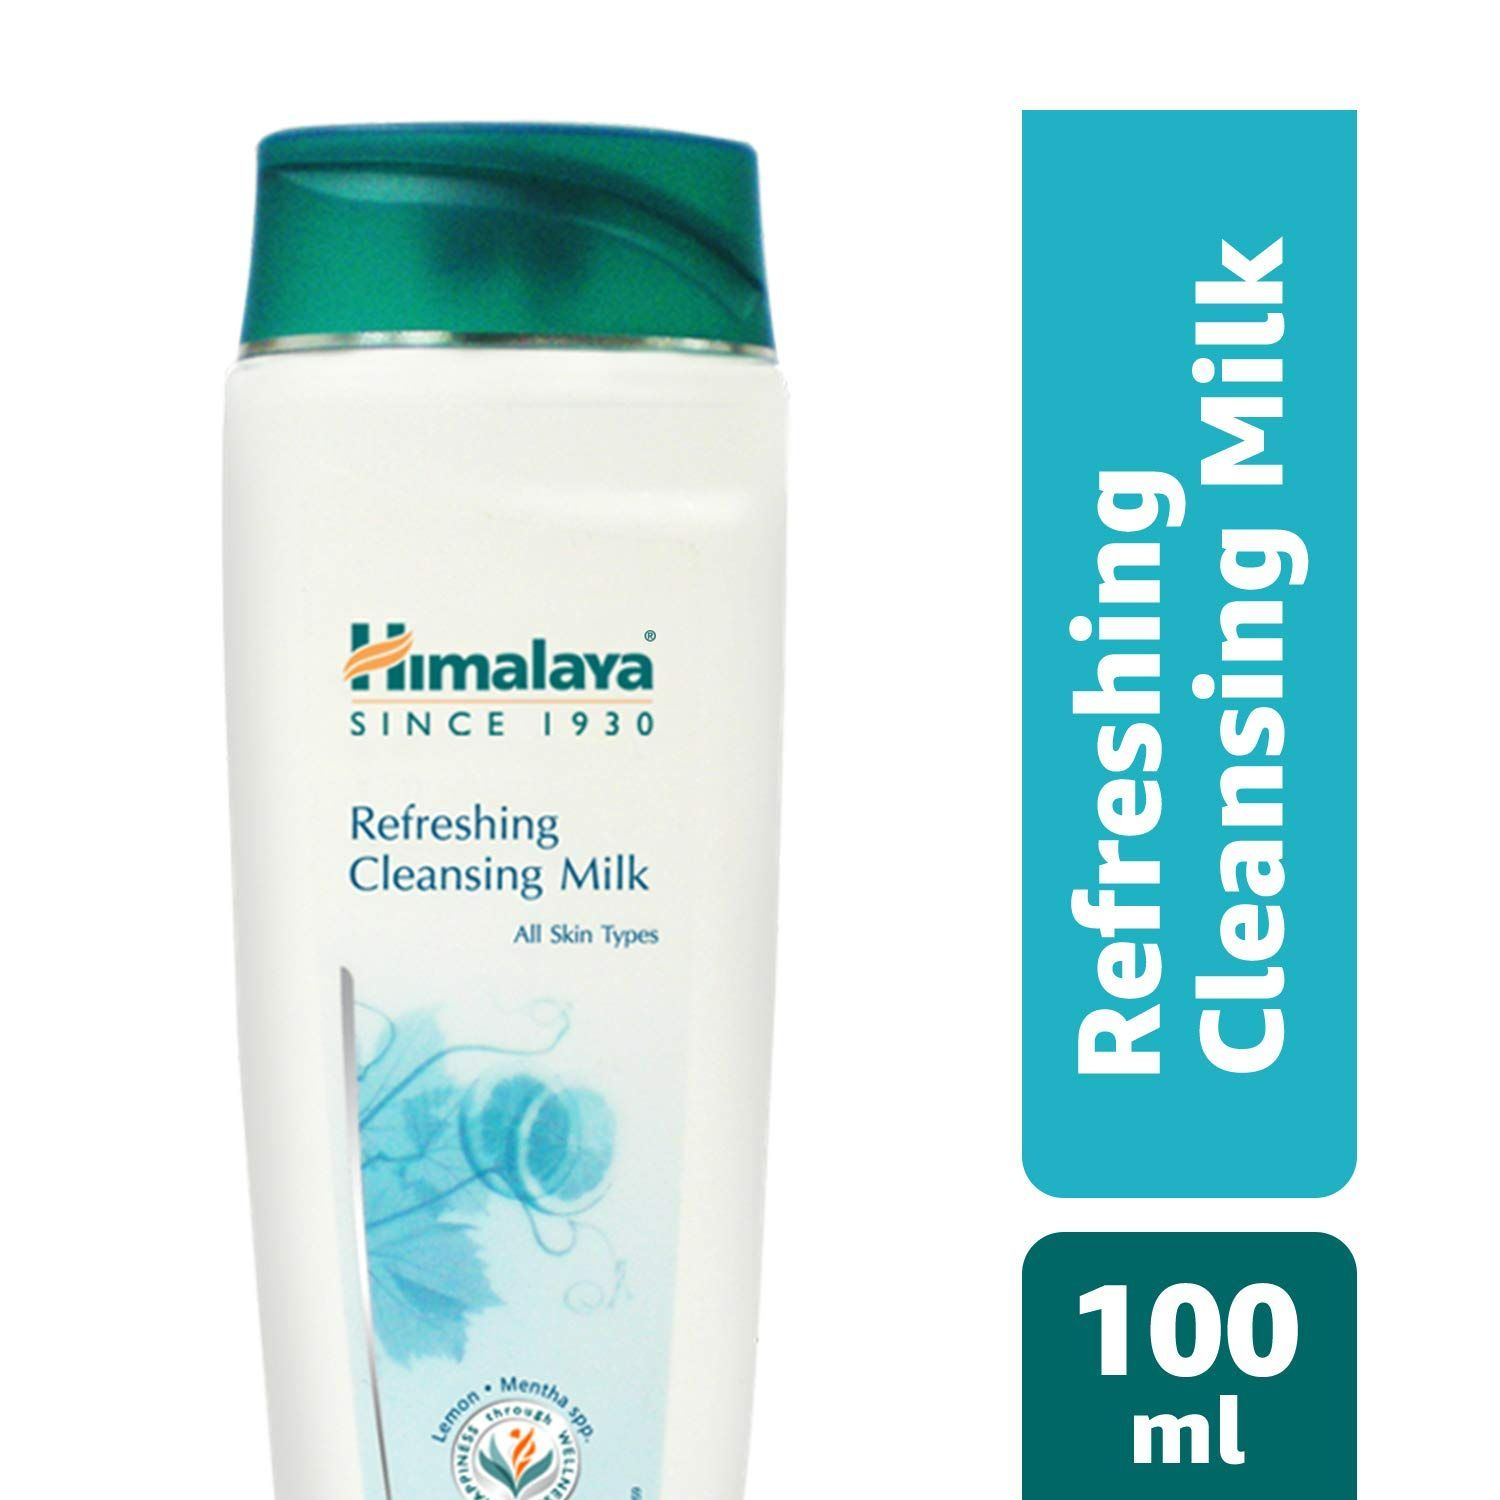 Buy Himalaya Refreshing Cleansing Milk (100 ml) - Purplle